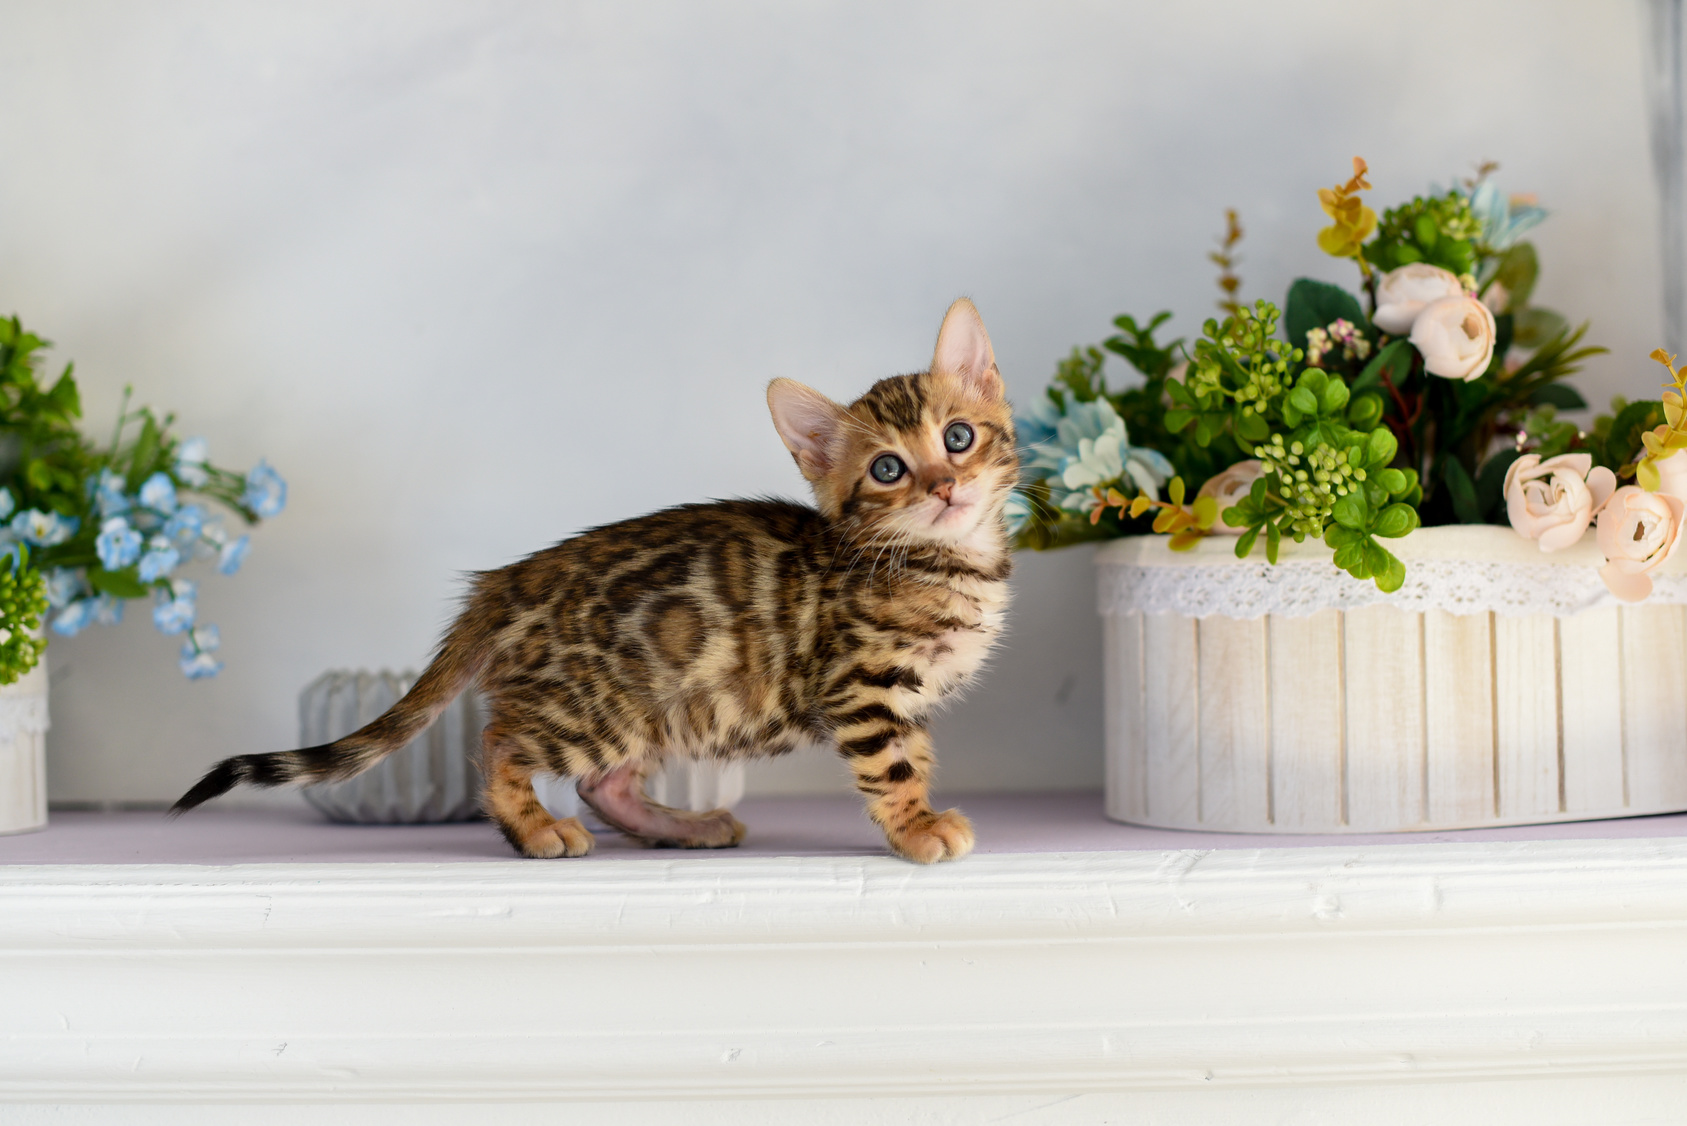 chaton bengal aux yeux bleus vu de profil entre deux pots de fleurs